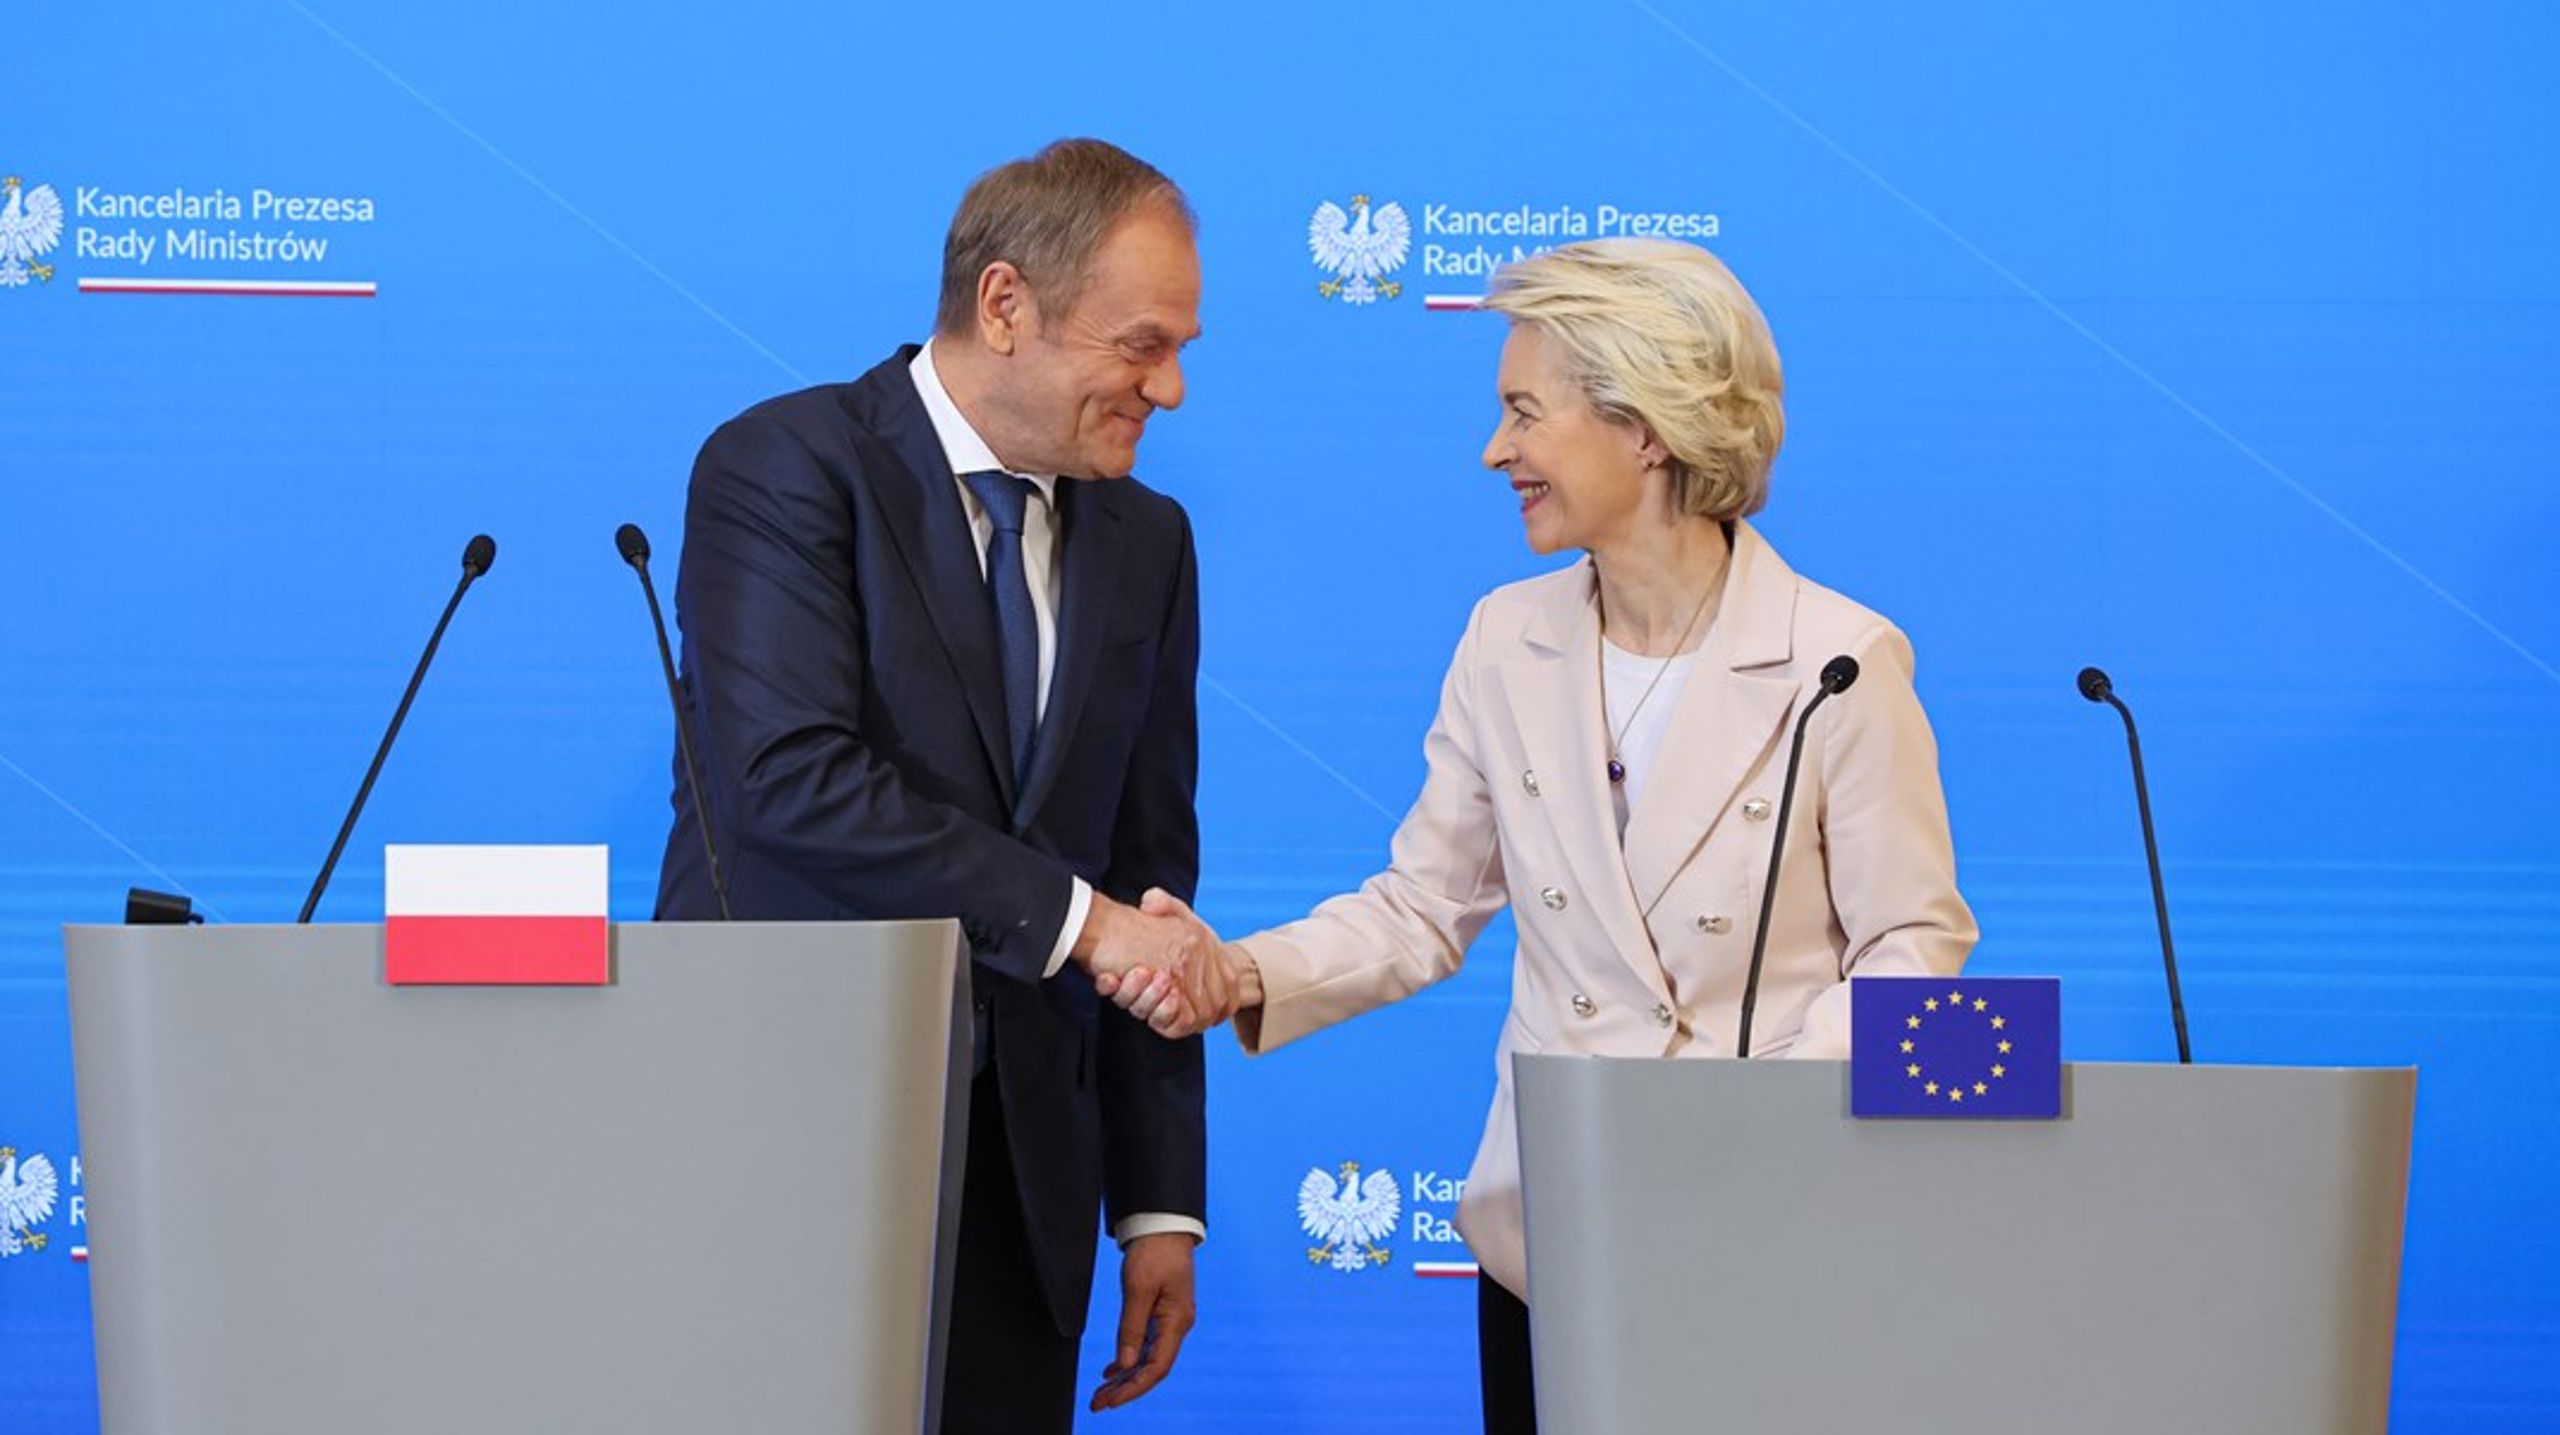 Sedan den nye polske regeringschefen Donald Tusk tillträdde i höstas har han försökt övertyga EU-kommissionens ordförande Ursula von der Leyen om att han är fast besluten att rätta till den förra regeringens kollisionskurs med Bryssel.